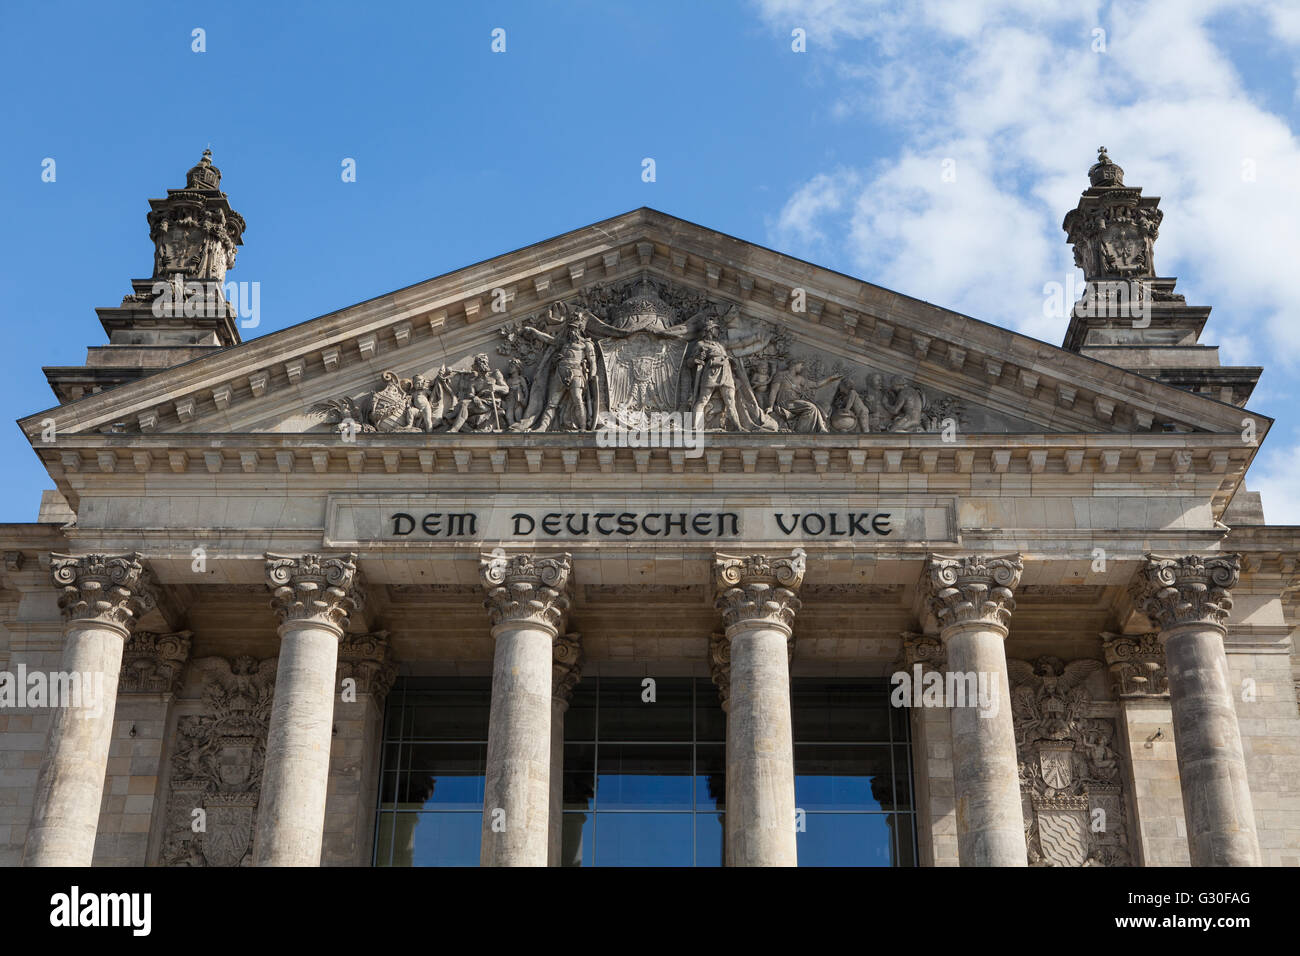 Iscrizione "em Deutschen Volke', per il popolo tedesco, e sollievo nel timpano sopra l'ingresso principale, Edificio del Reichstag Foto Stock